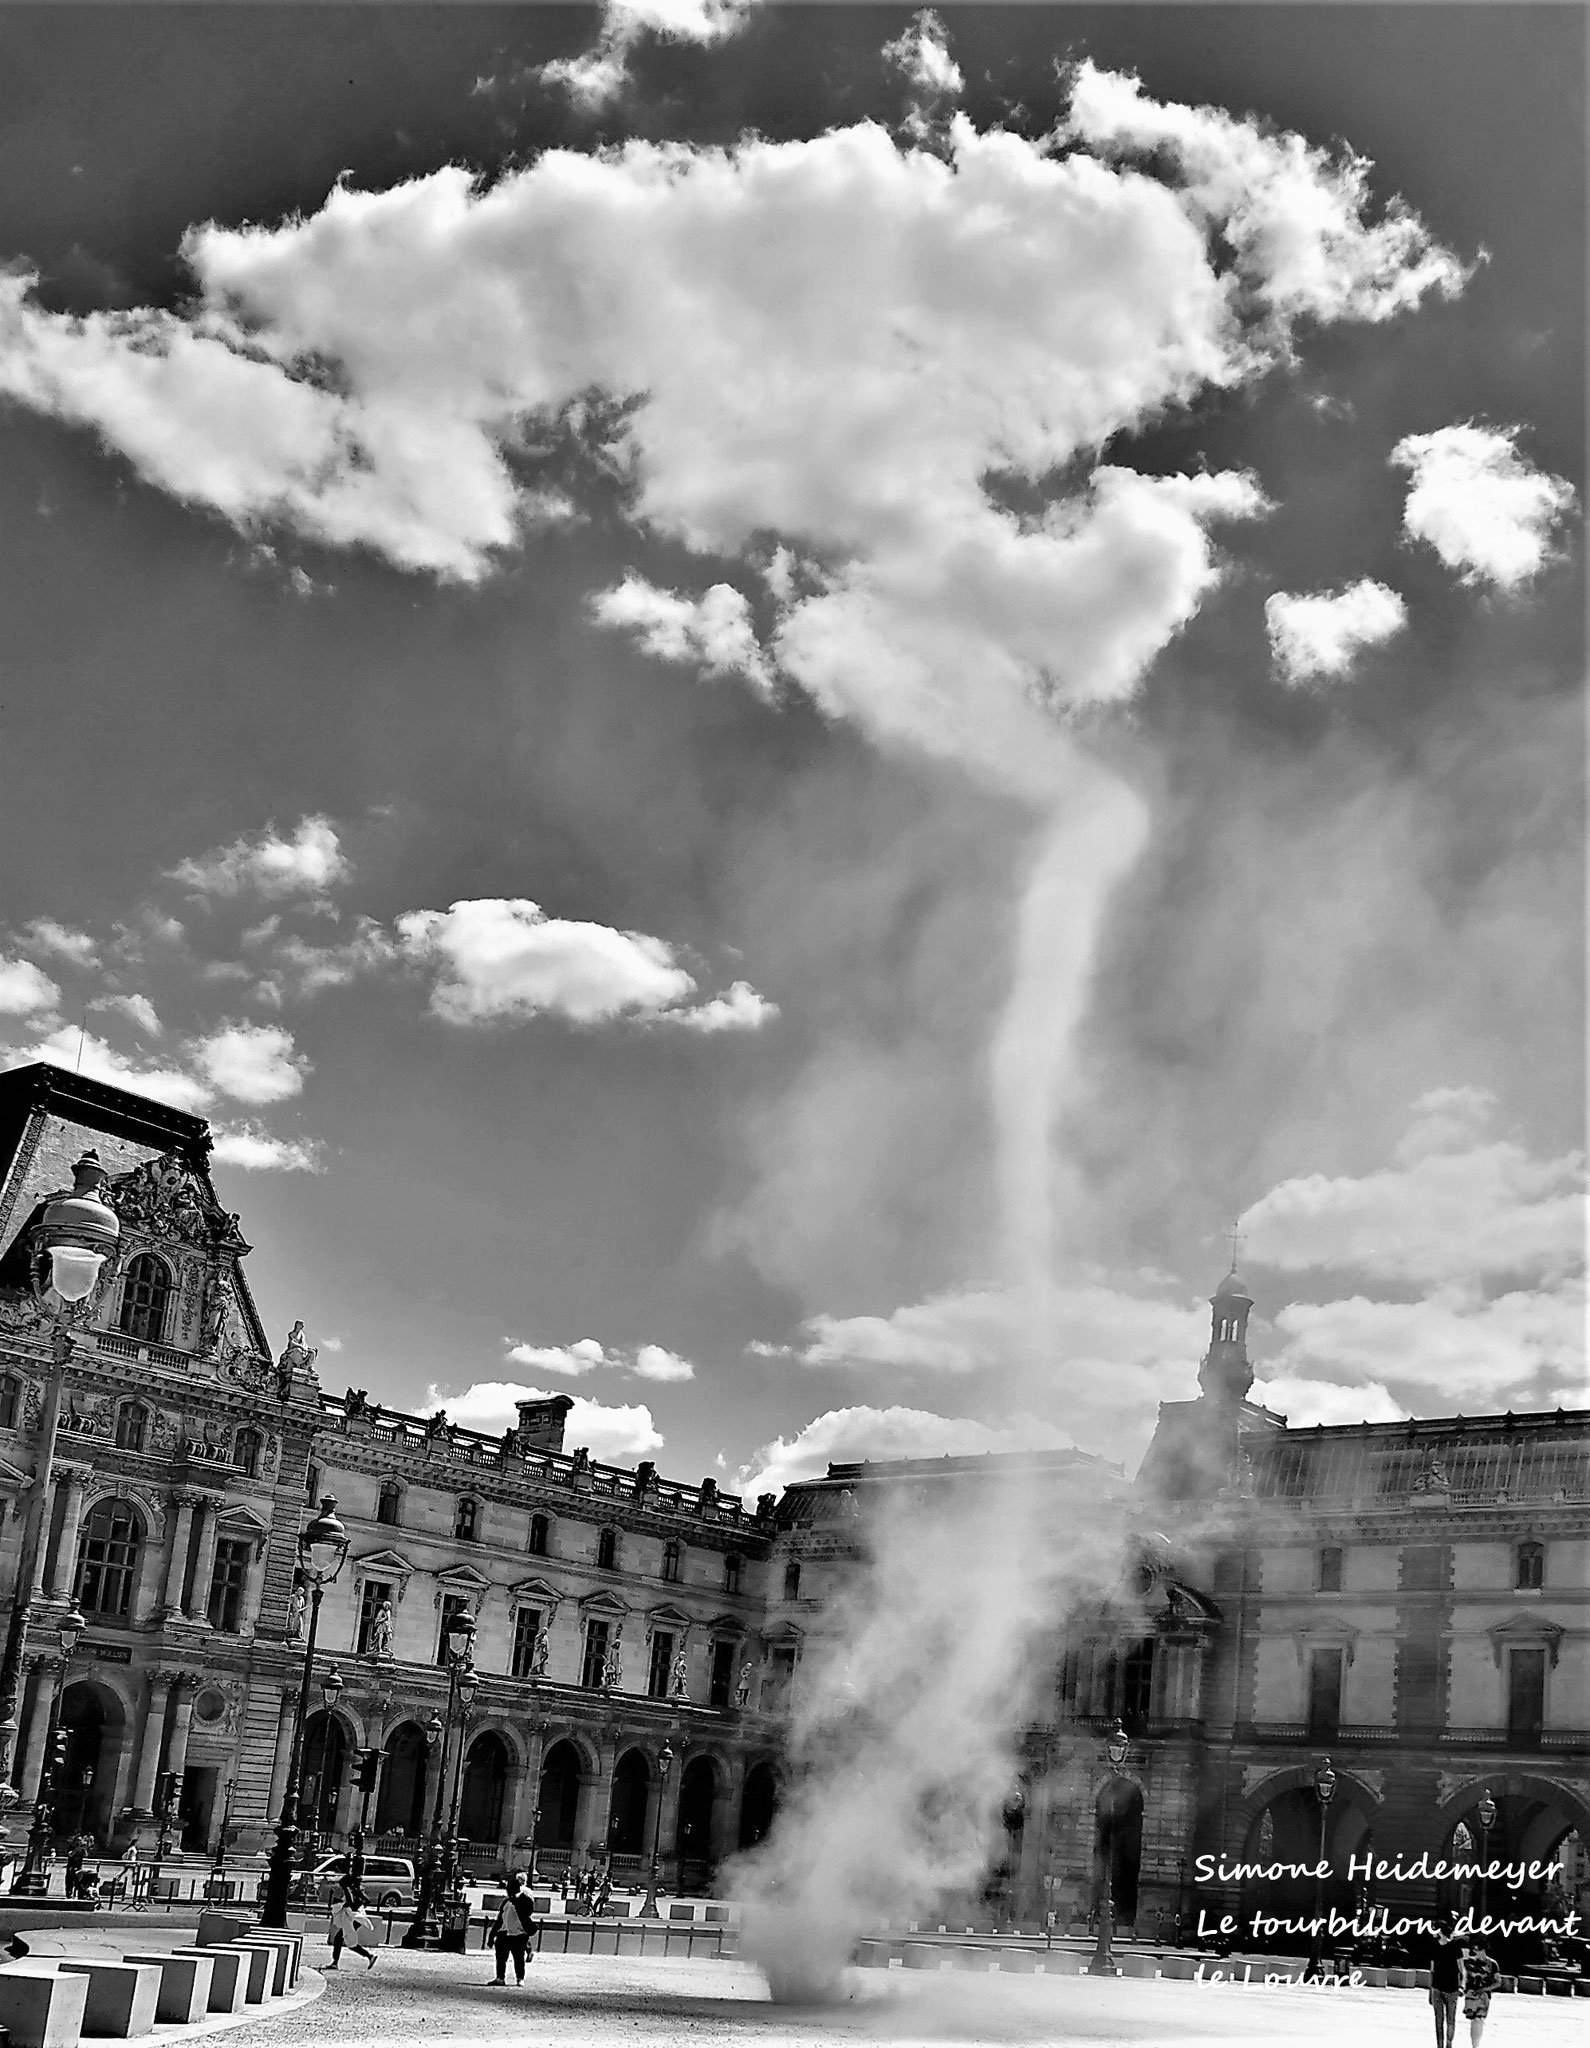 Le tourbillon devant le Louvre